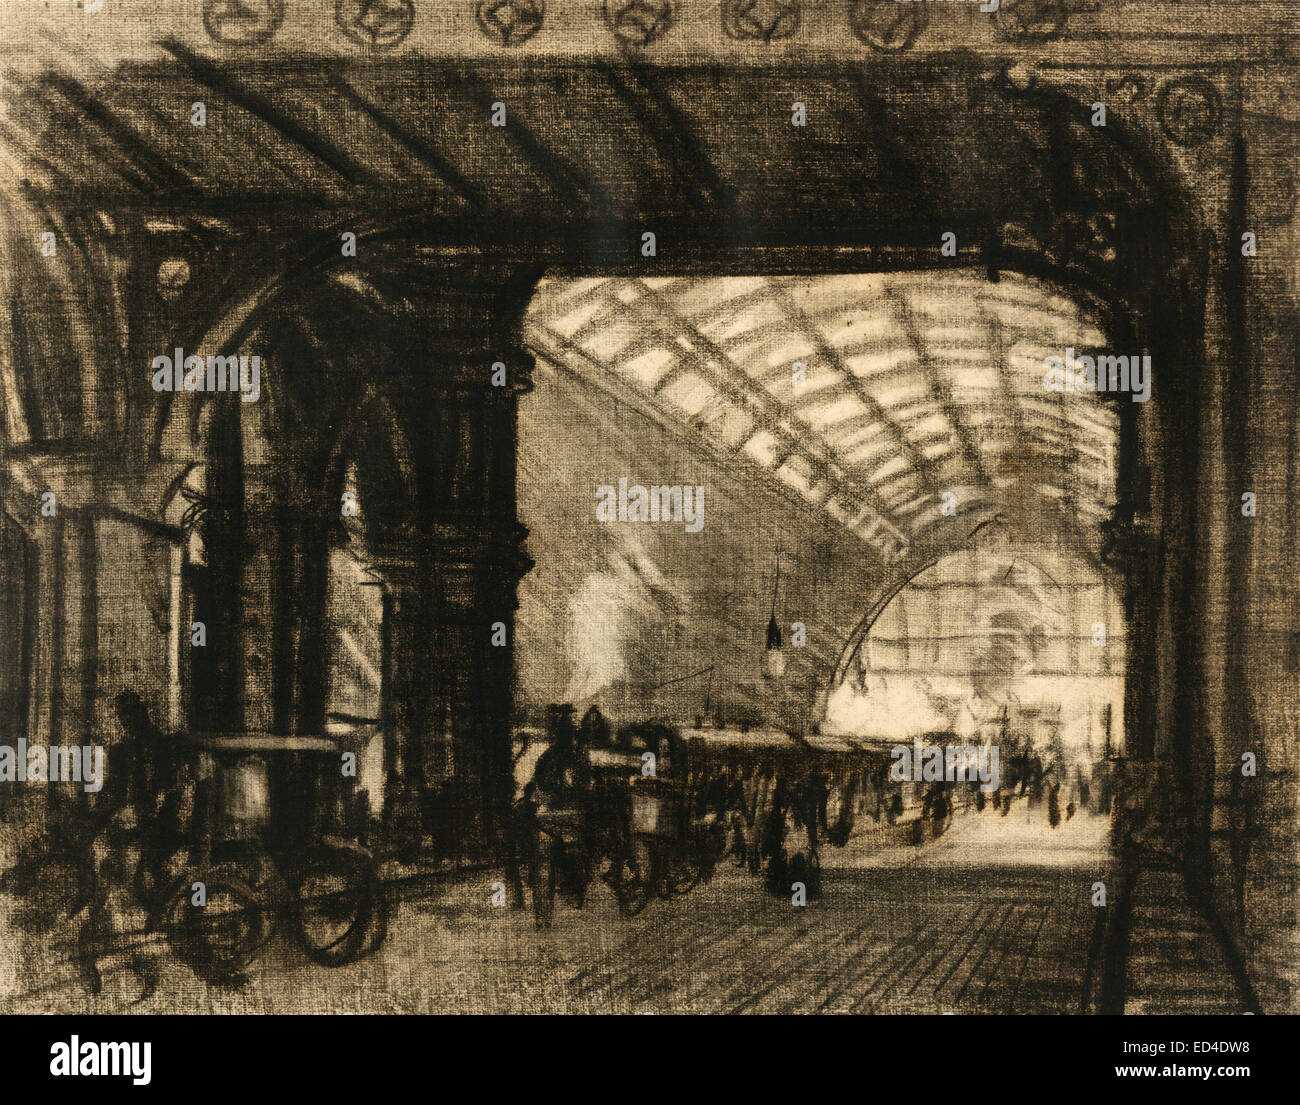 Bahnhof St. Pancras - London, England.  Frühere Beförderung im Vordergrund links unter der Brücke zu lange Skylit gewölbt Station überfüllt mit Figuren und Wagen, ca. 1908 anzeigen Stockfoto